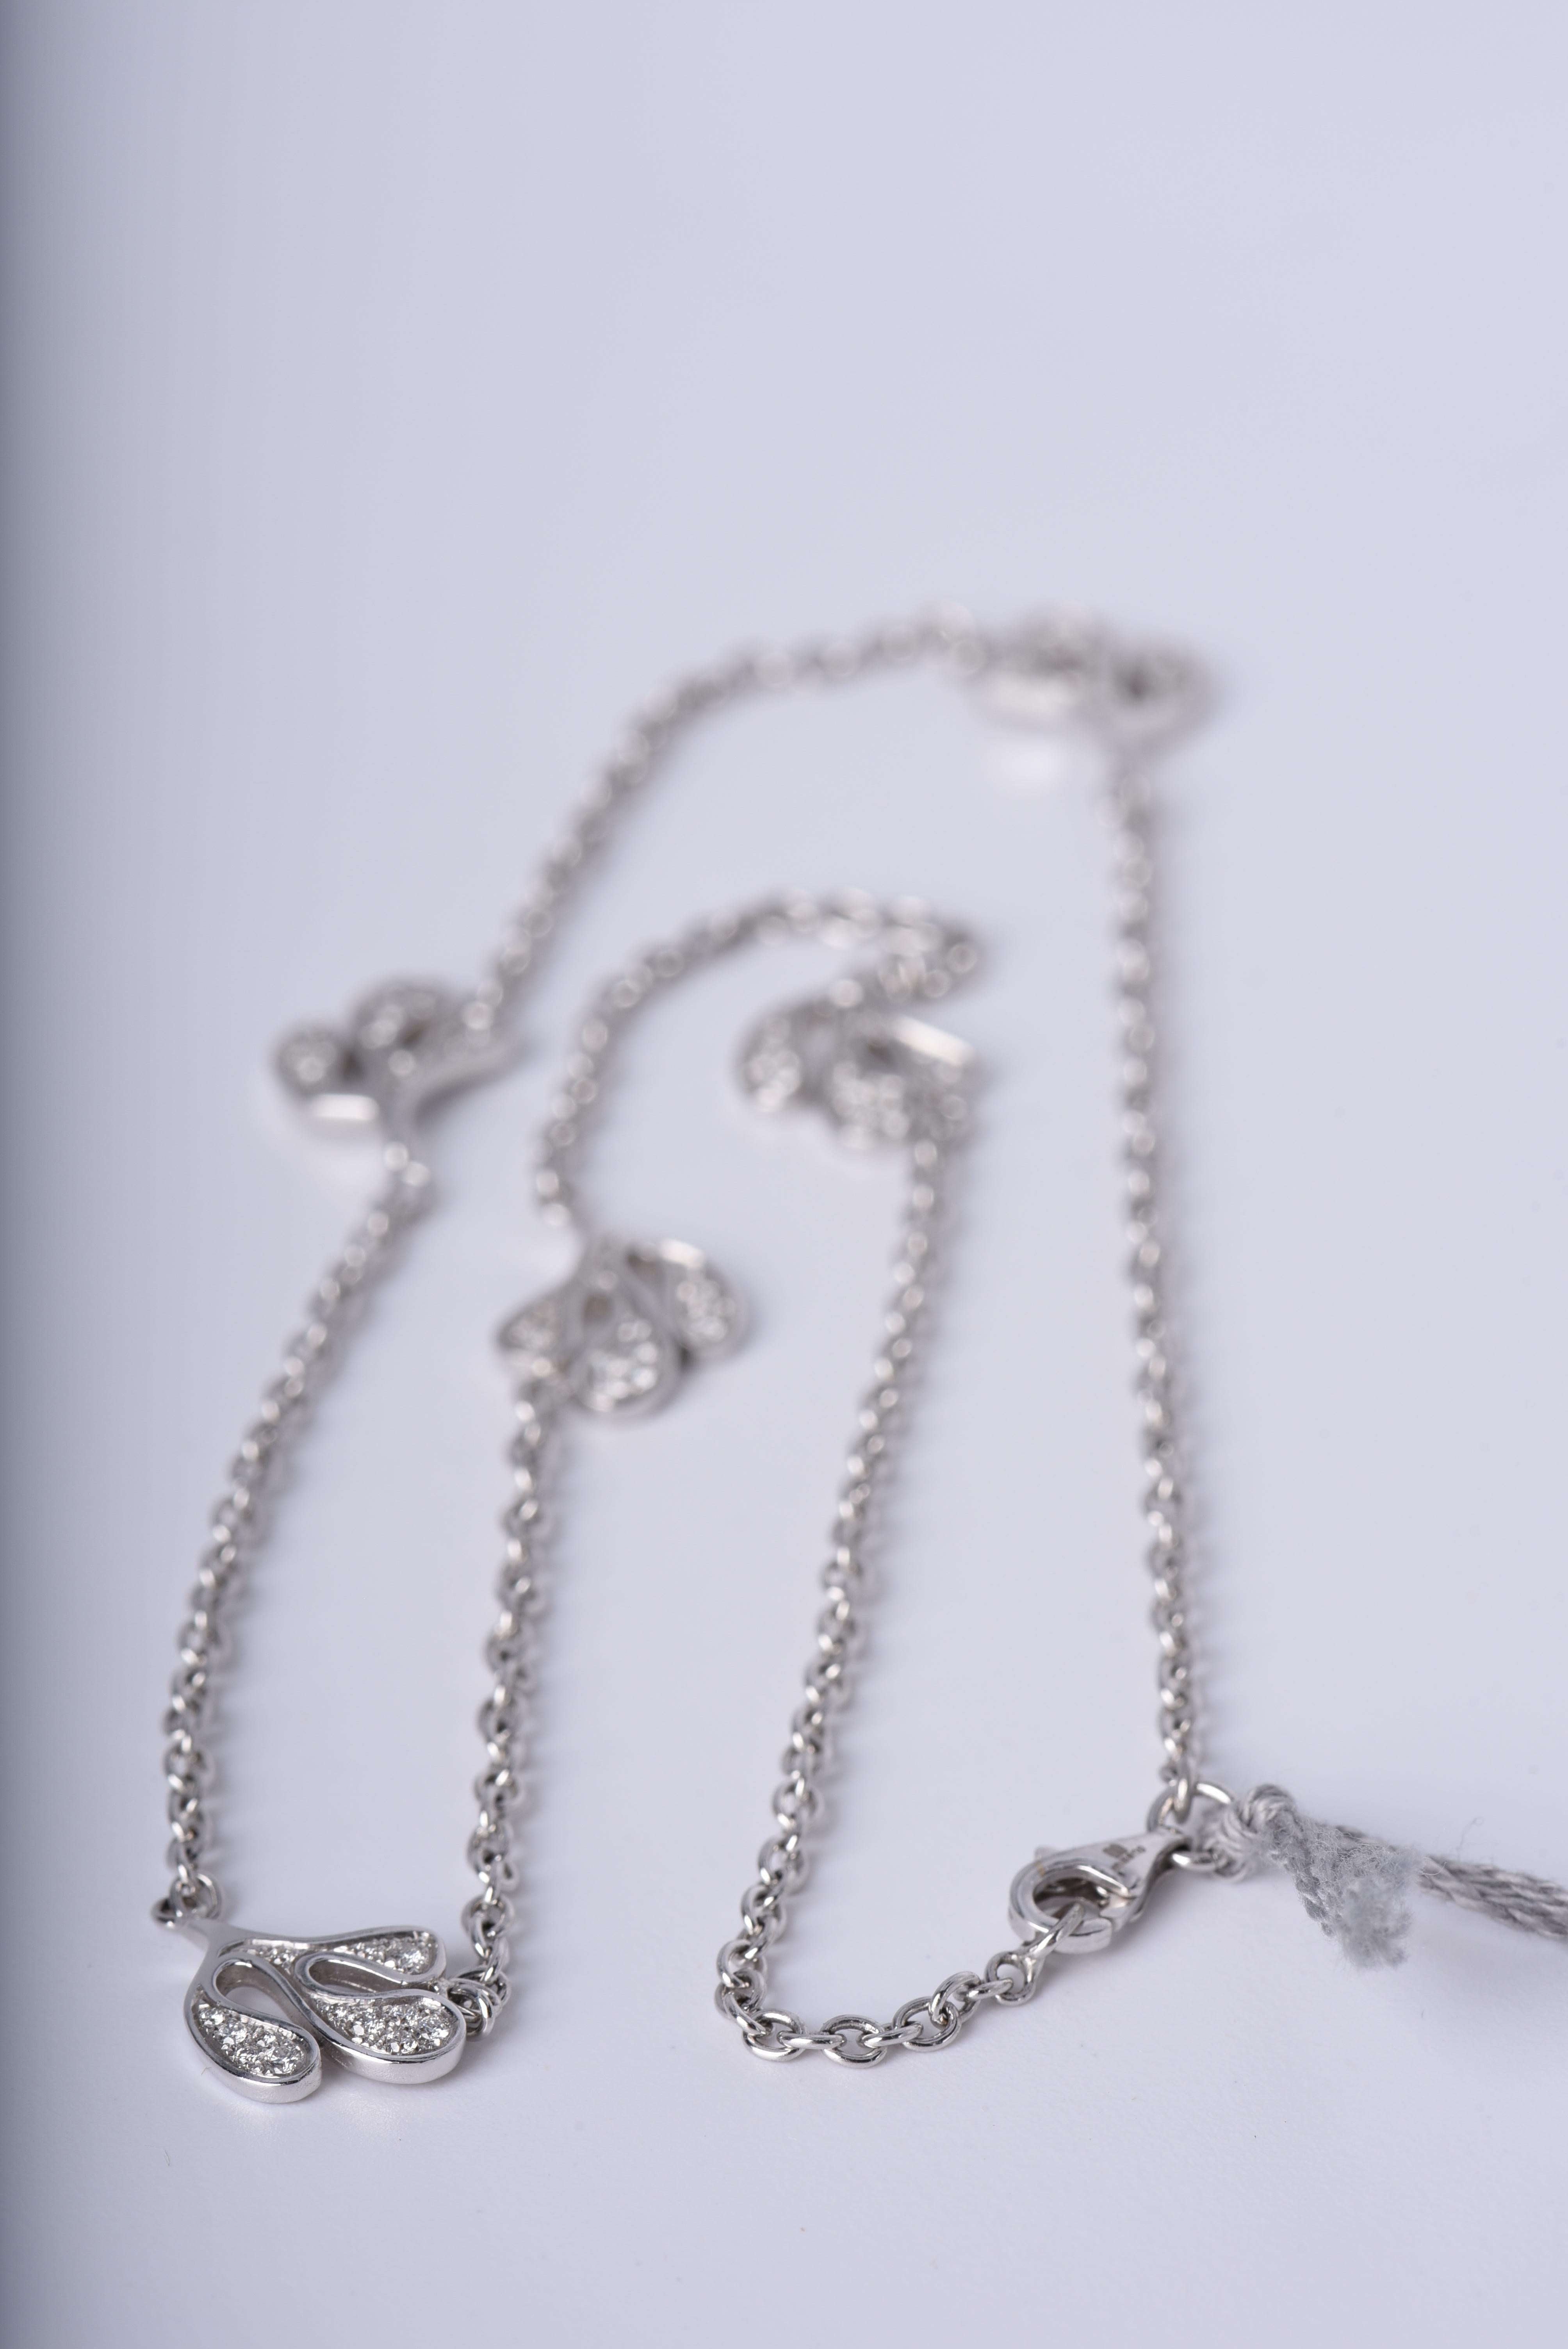 Halskette aus 18 Karat Weißgold (ca. 12,9 g) mit weißen Diamanten (ca. 0,58 Karat), gefasst auf Sea Leaf-Elementen. Diese Halskette stammt aus der Kollektion Foglia di Mare (Meeresblatt) von Miseno, die vom Mittelmeer und dem Leben unter der